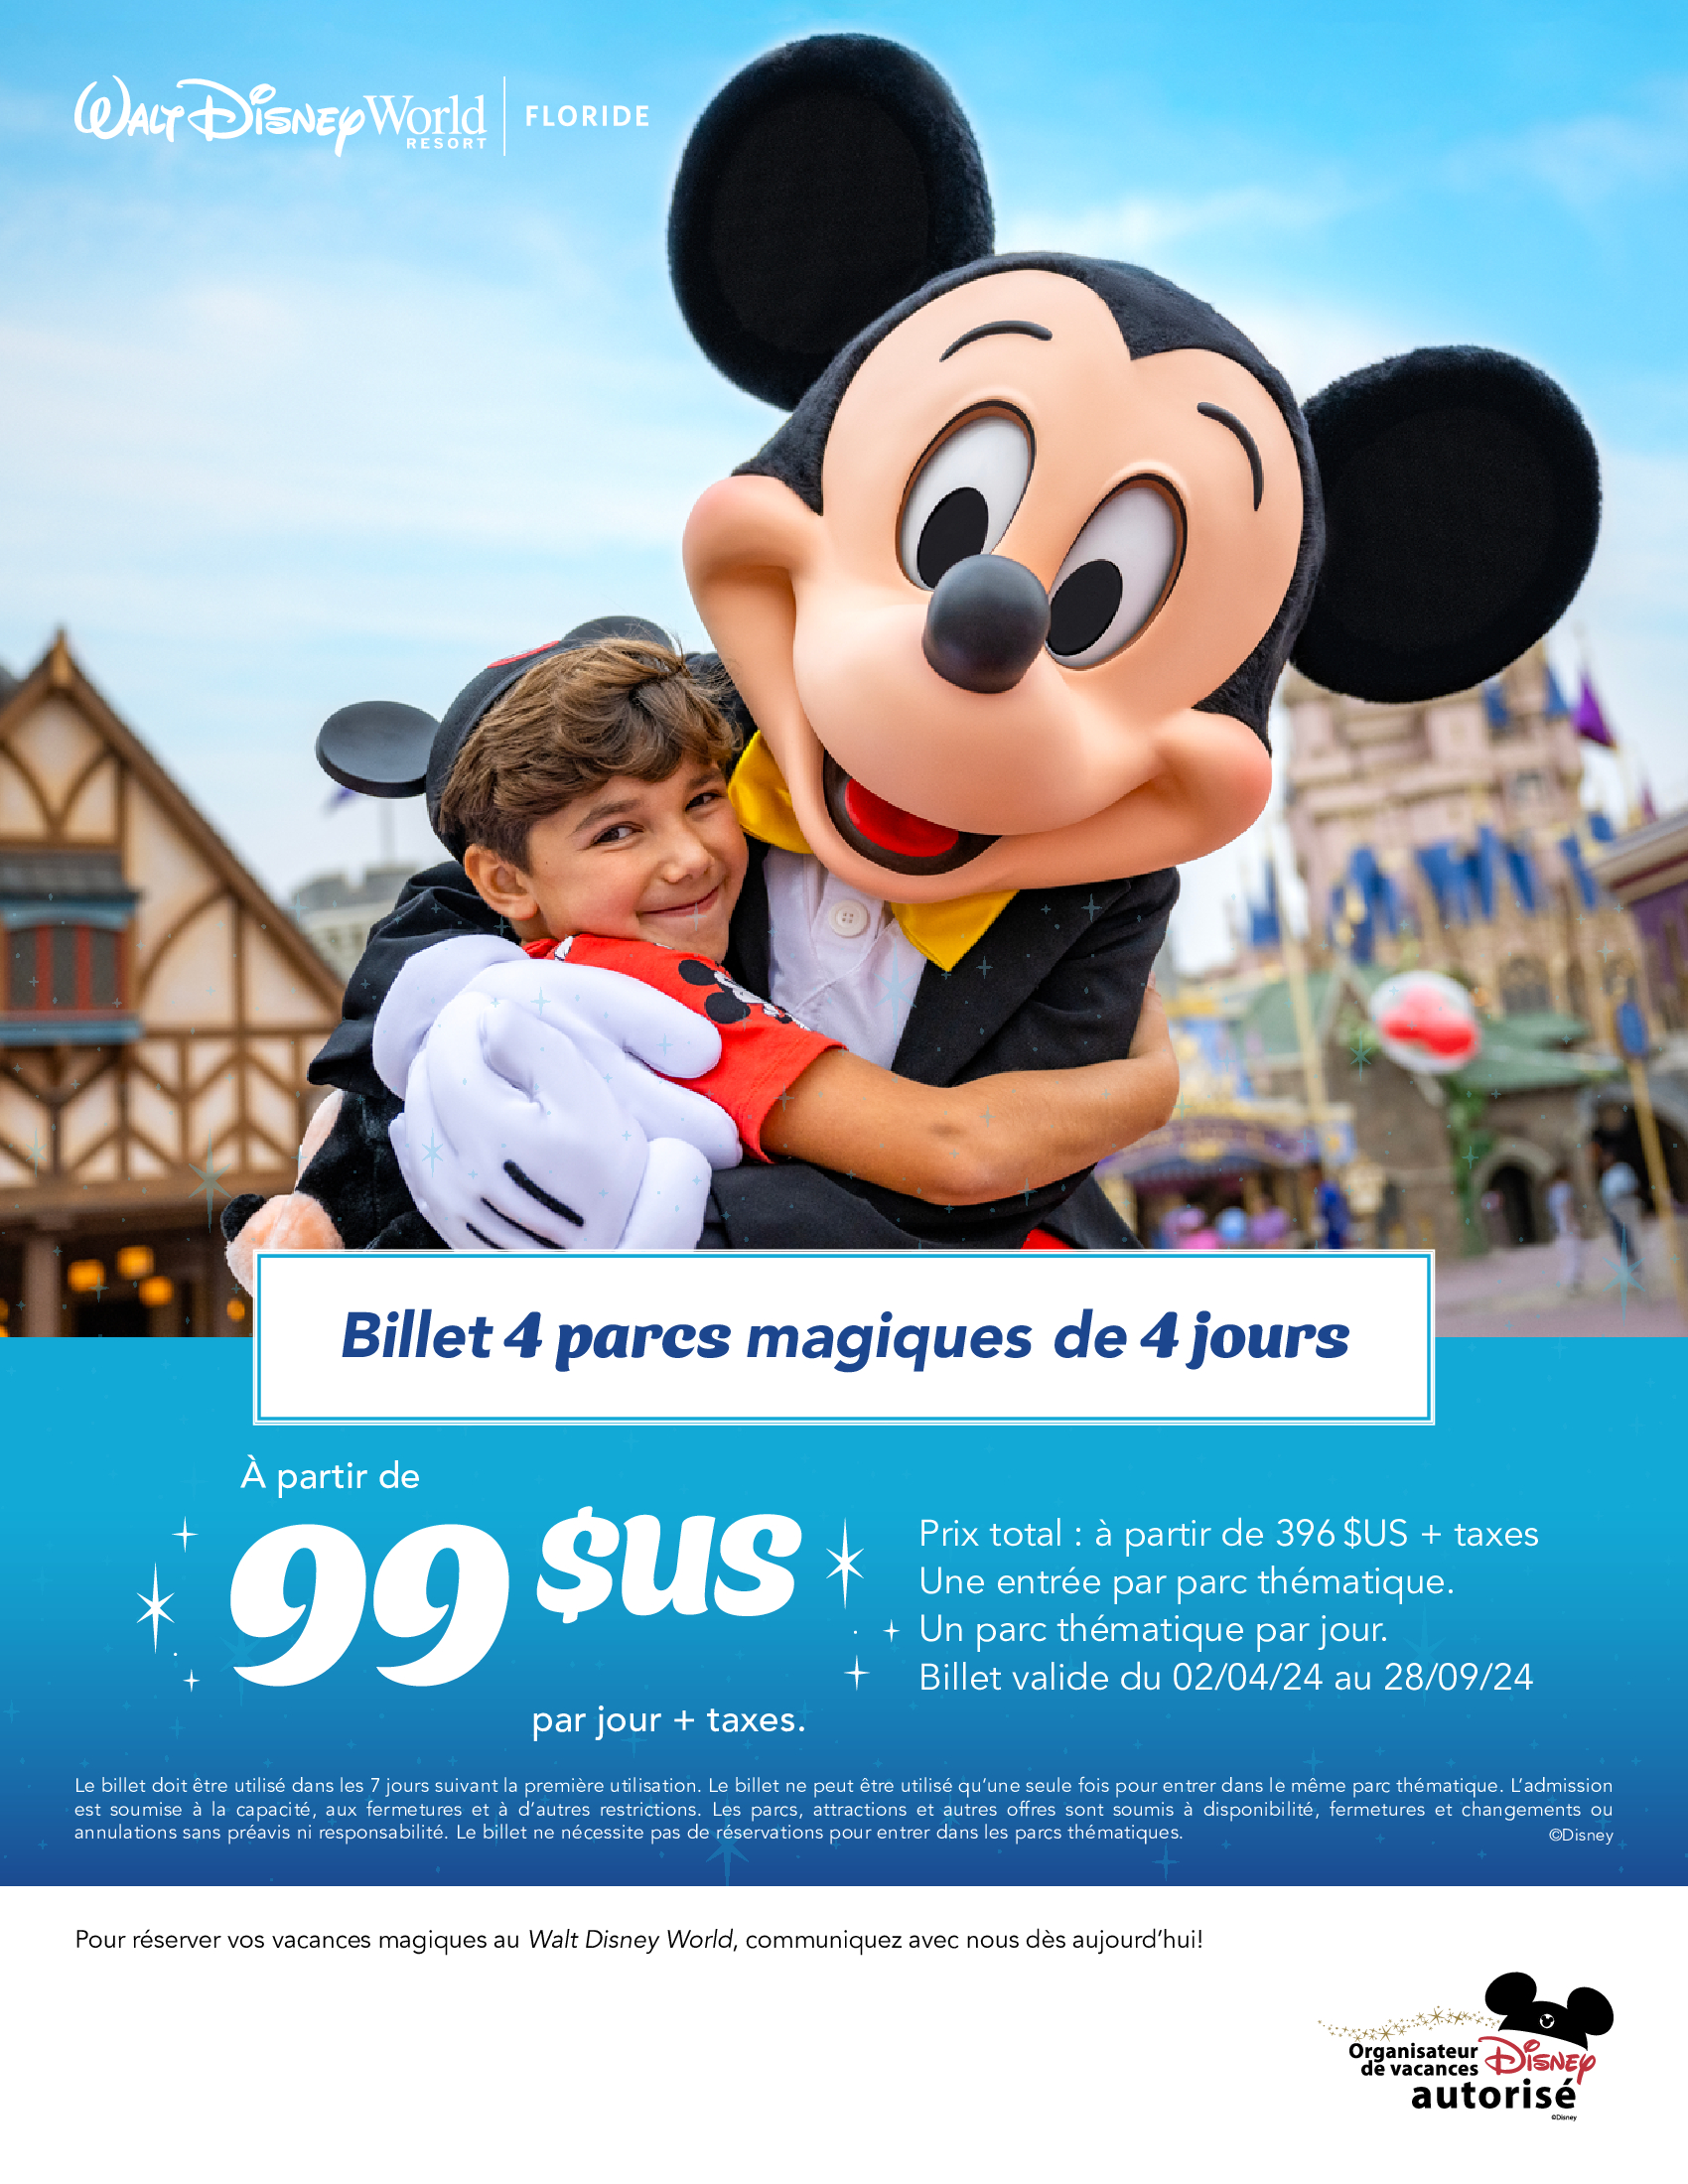 Walt Disney World Resort Billet 4 parcs magiques de 4 jours a partir de 99$ US par jour + taxes